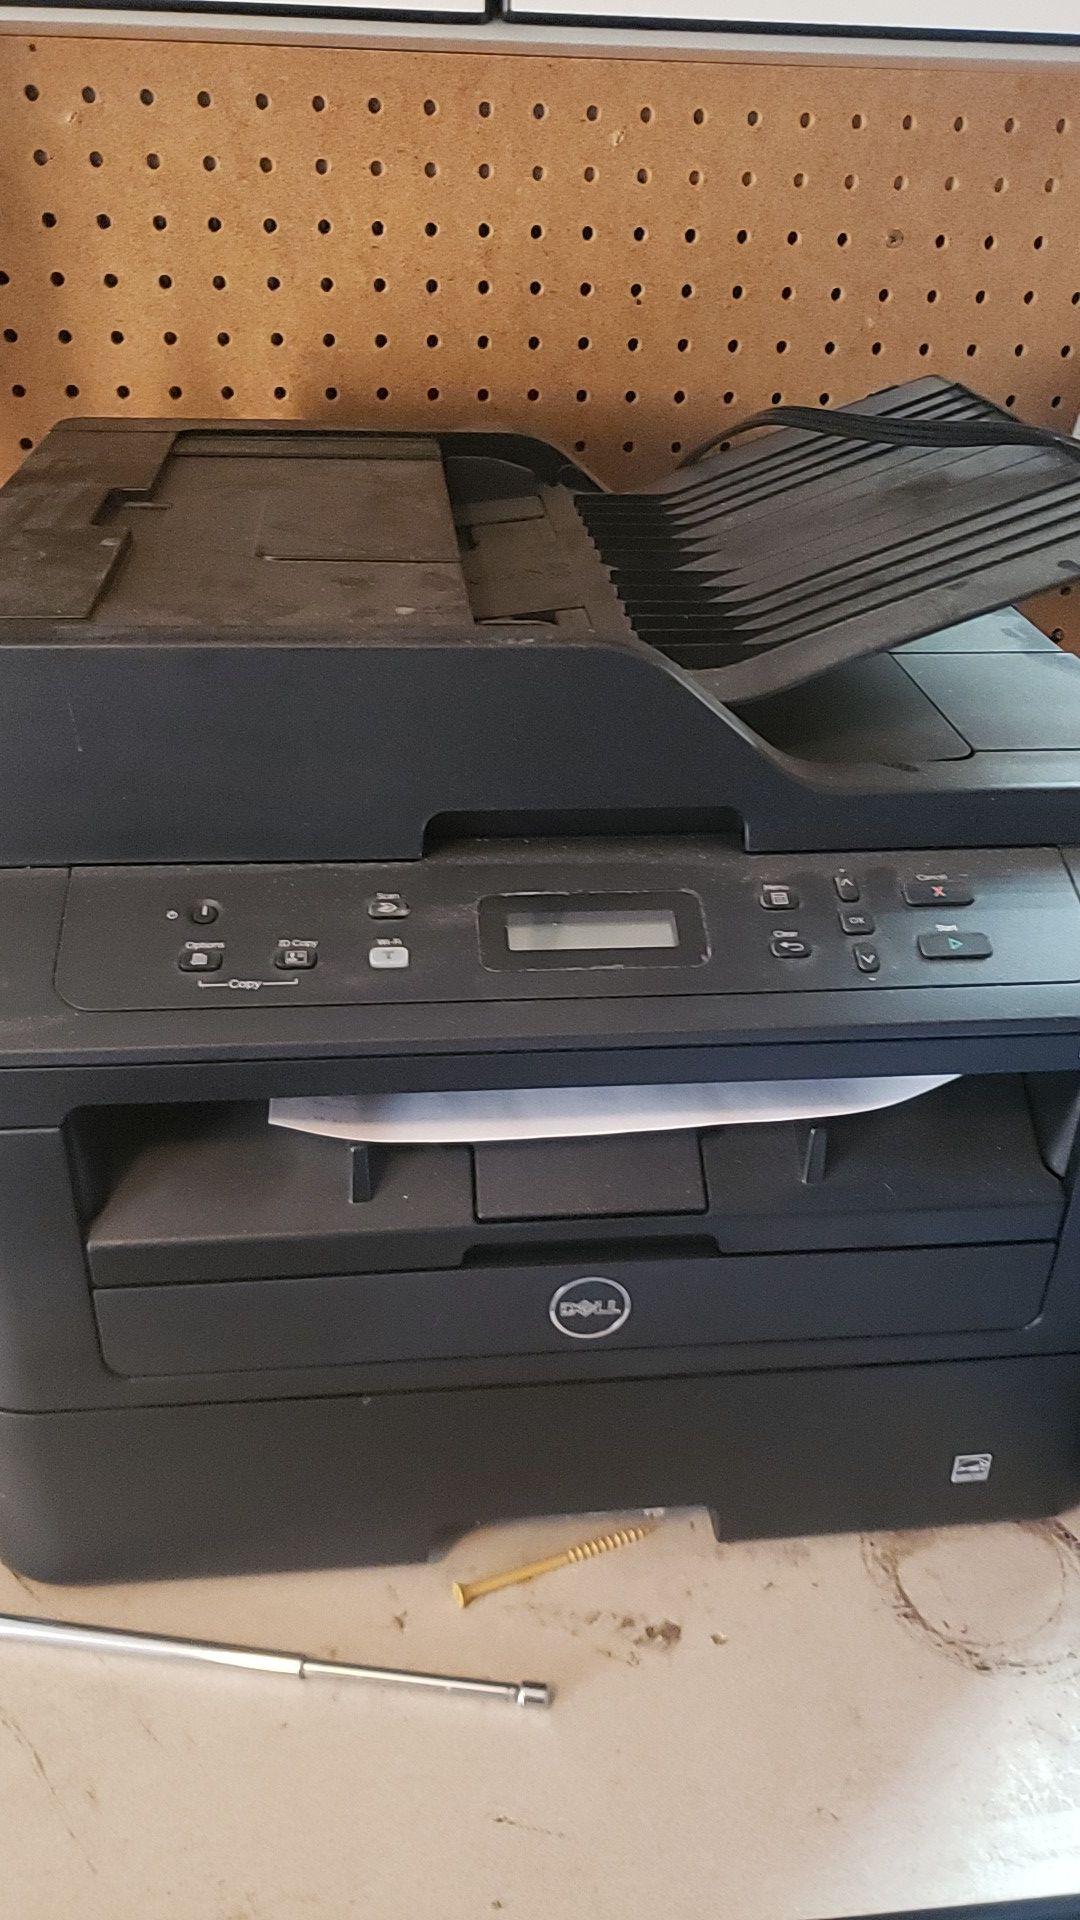 Dell Printer Copy Fax